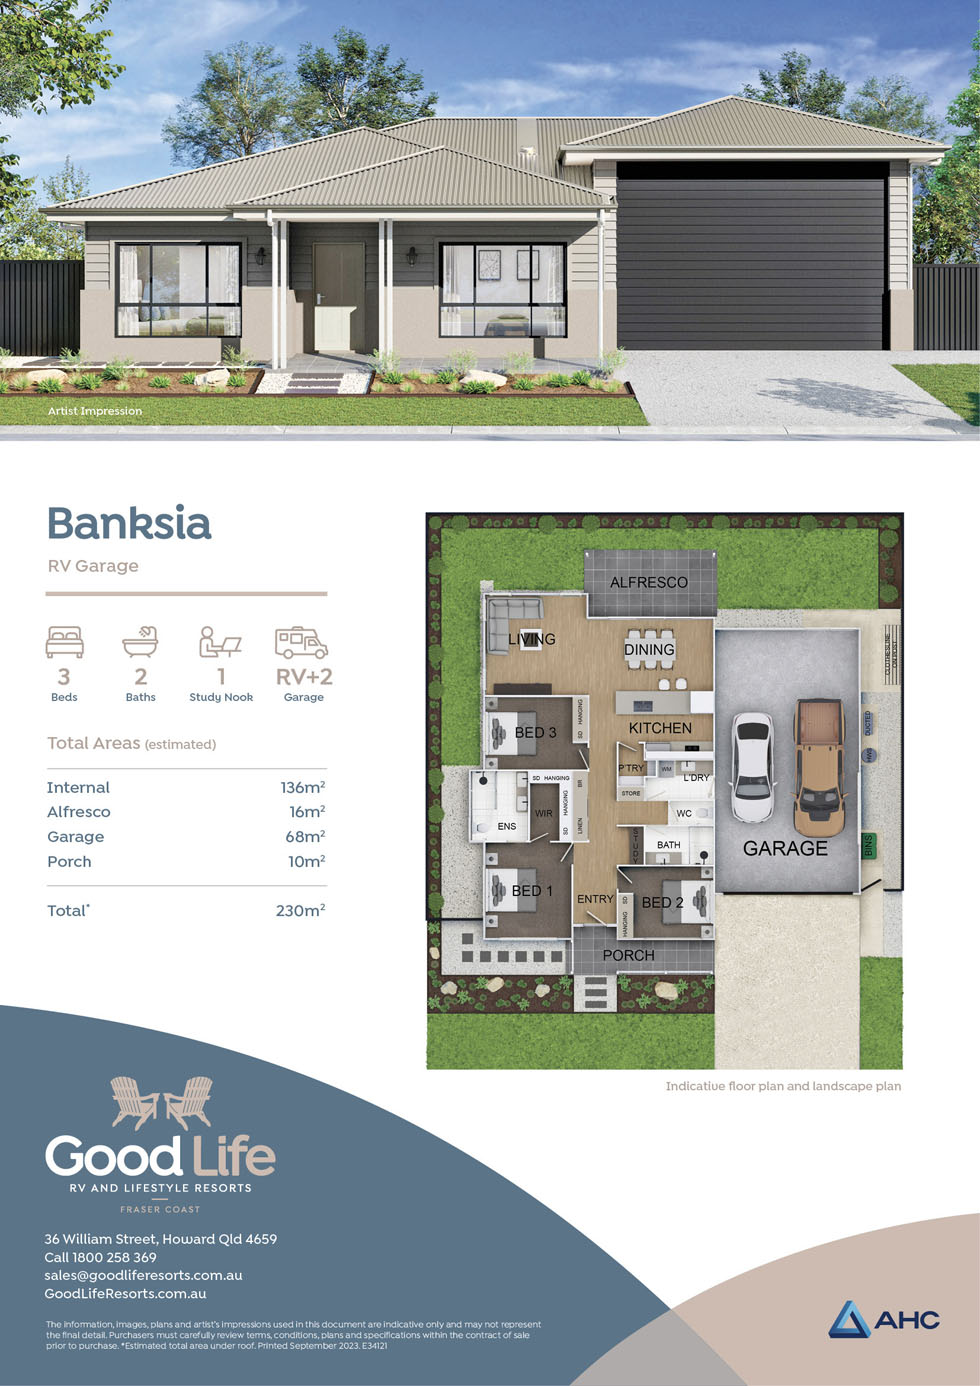 Home Design: Banksia RV Garage